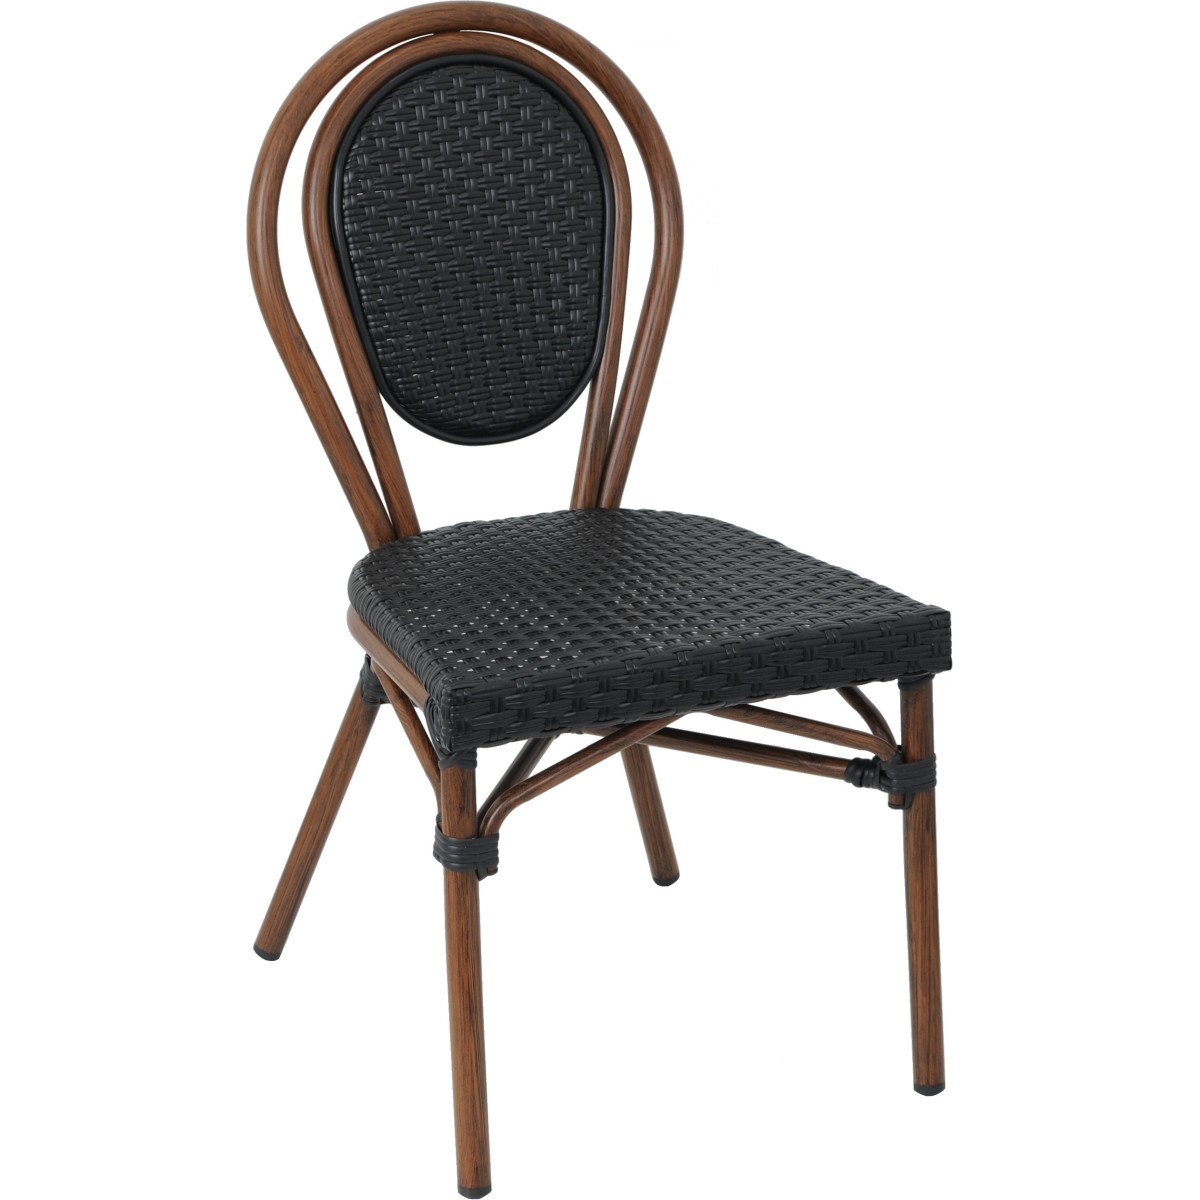 Chaise de restaurant Cergy empilable en aluminium rotin : idéale pour les établissements de restauration de style bistrot